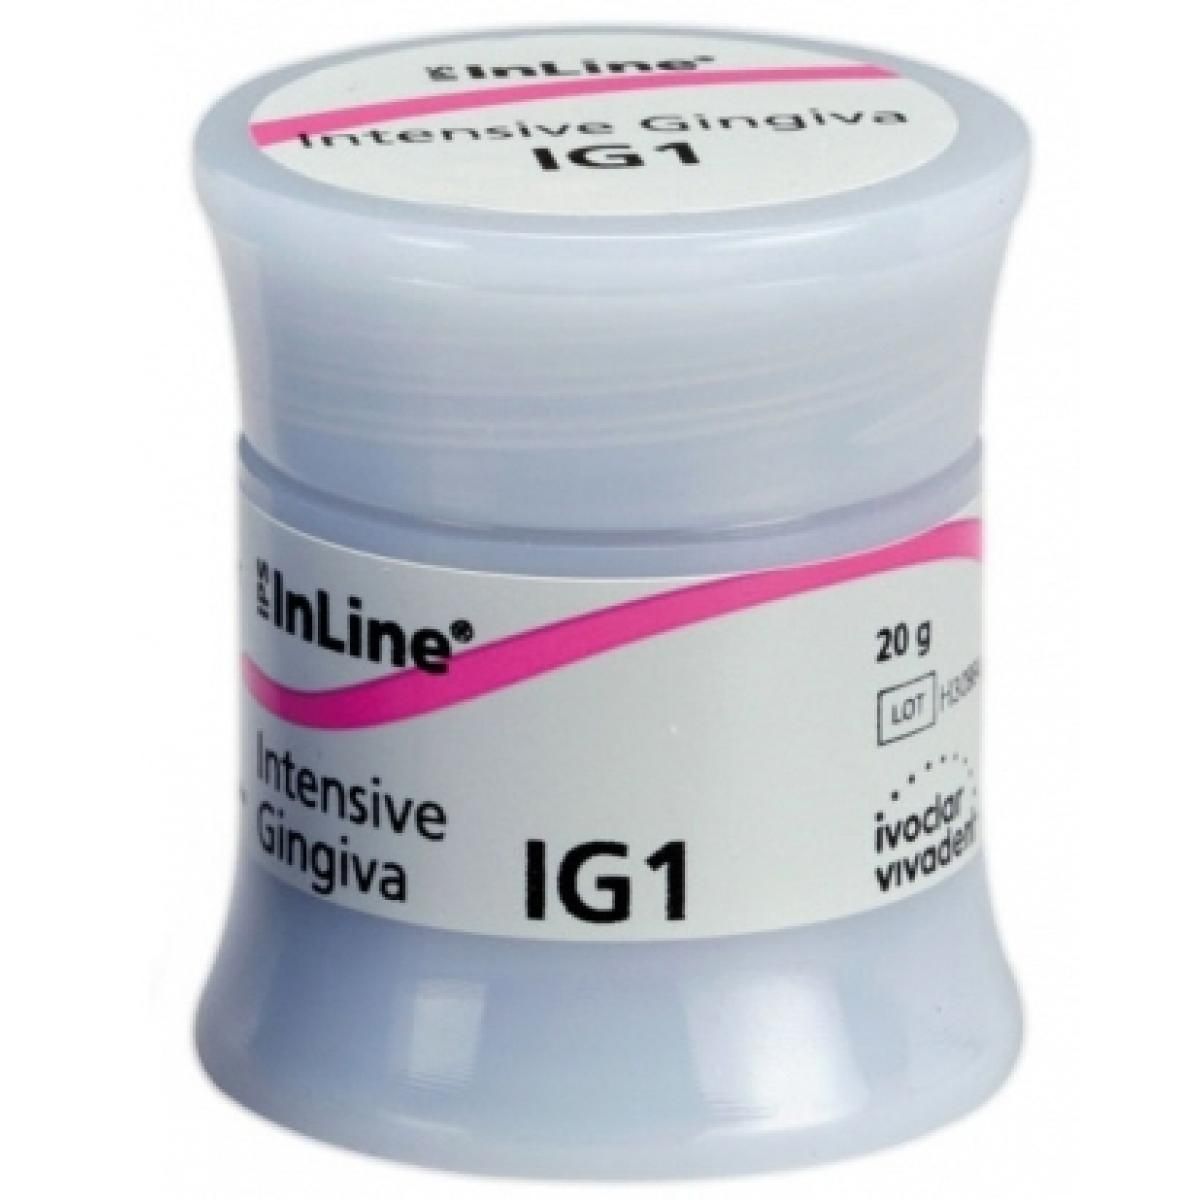 IPS INLINE INTENSIVO GINGIVA N 2 20GR IVOCLAR -